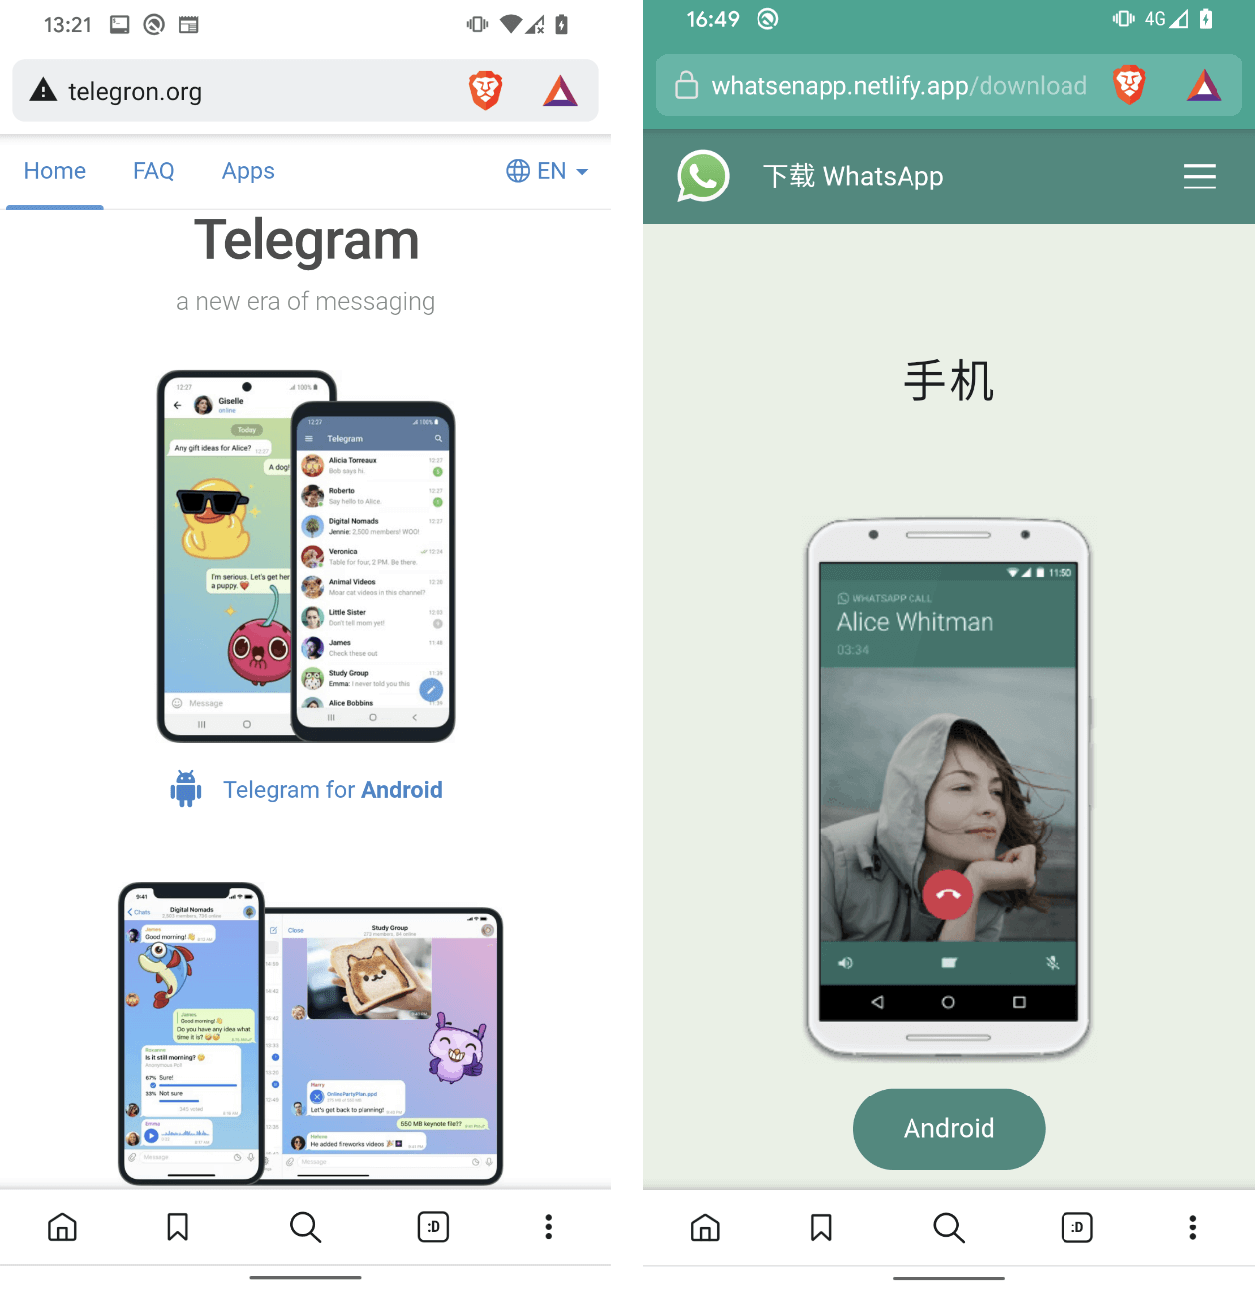 图 1. 模仿 Telegram 和 WhatsApp 的网站